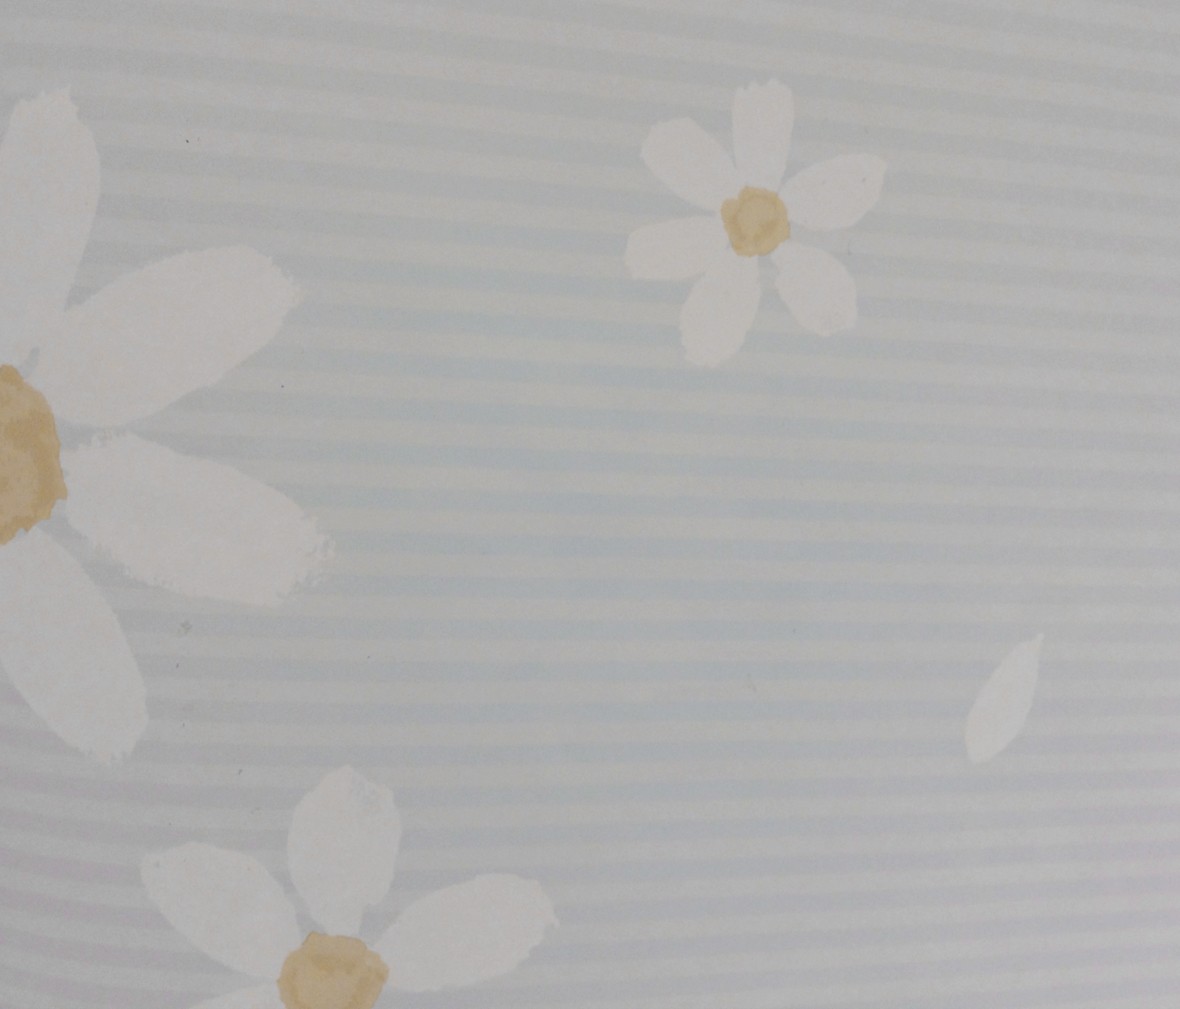 格莱美壁纸 梦想乐园系列 KJ52104型号 进口环保纯纸墙纸 细节展示